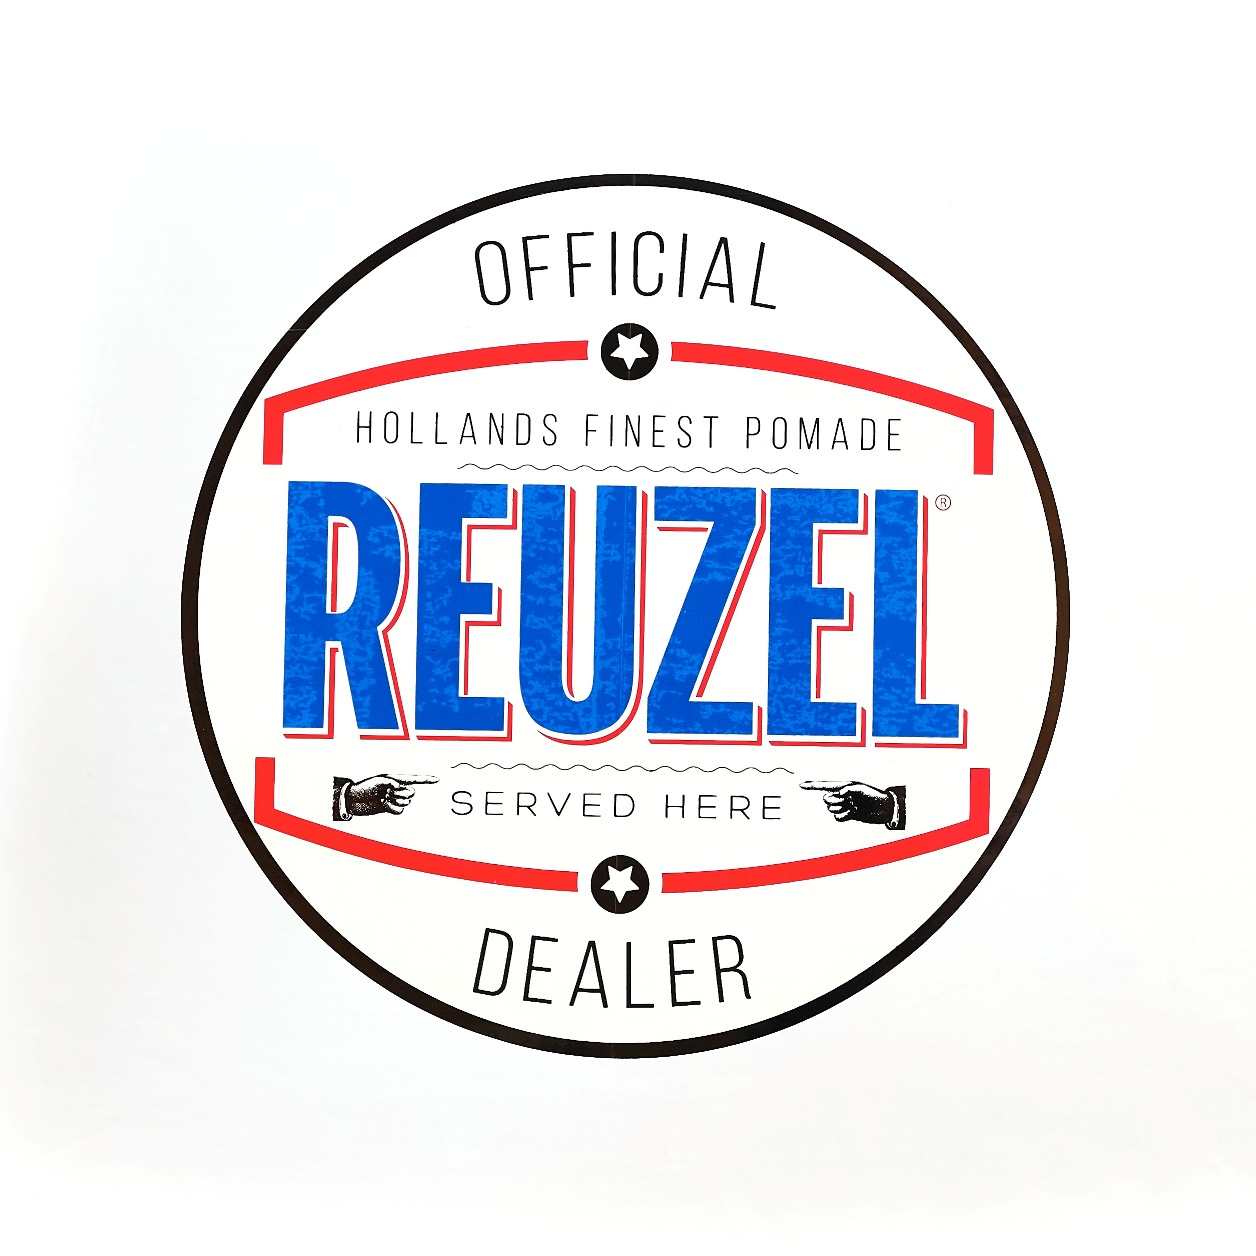 Reuzel Window Sticker